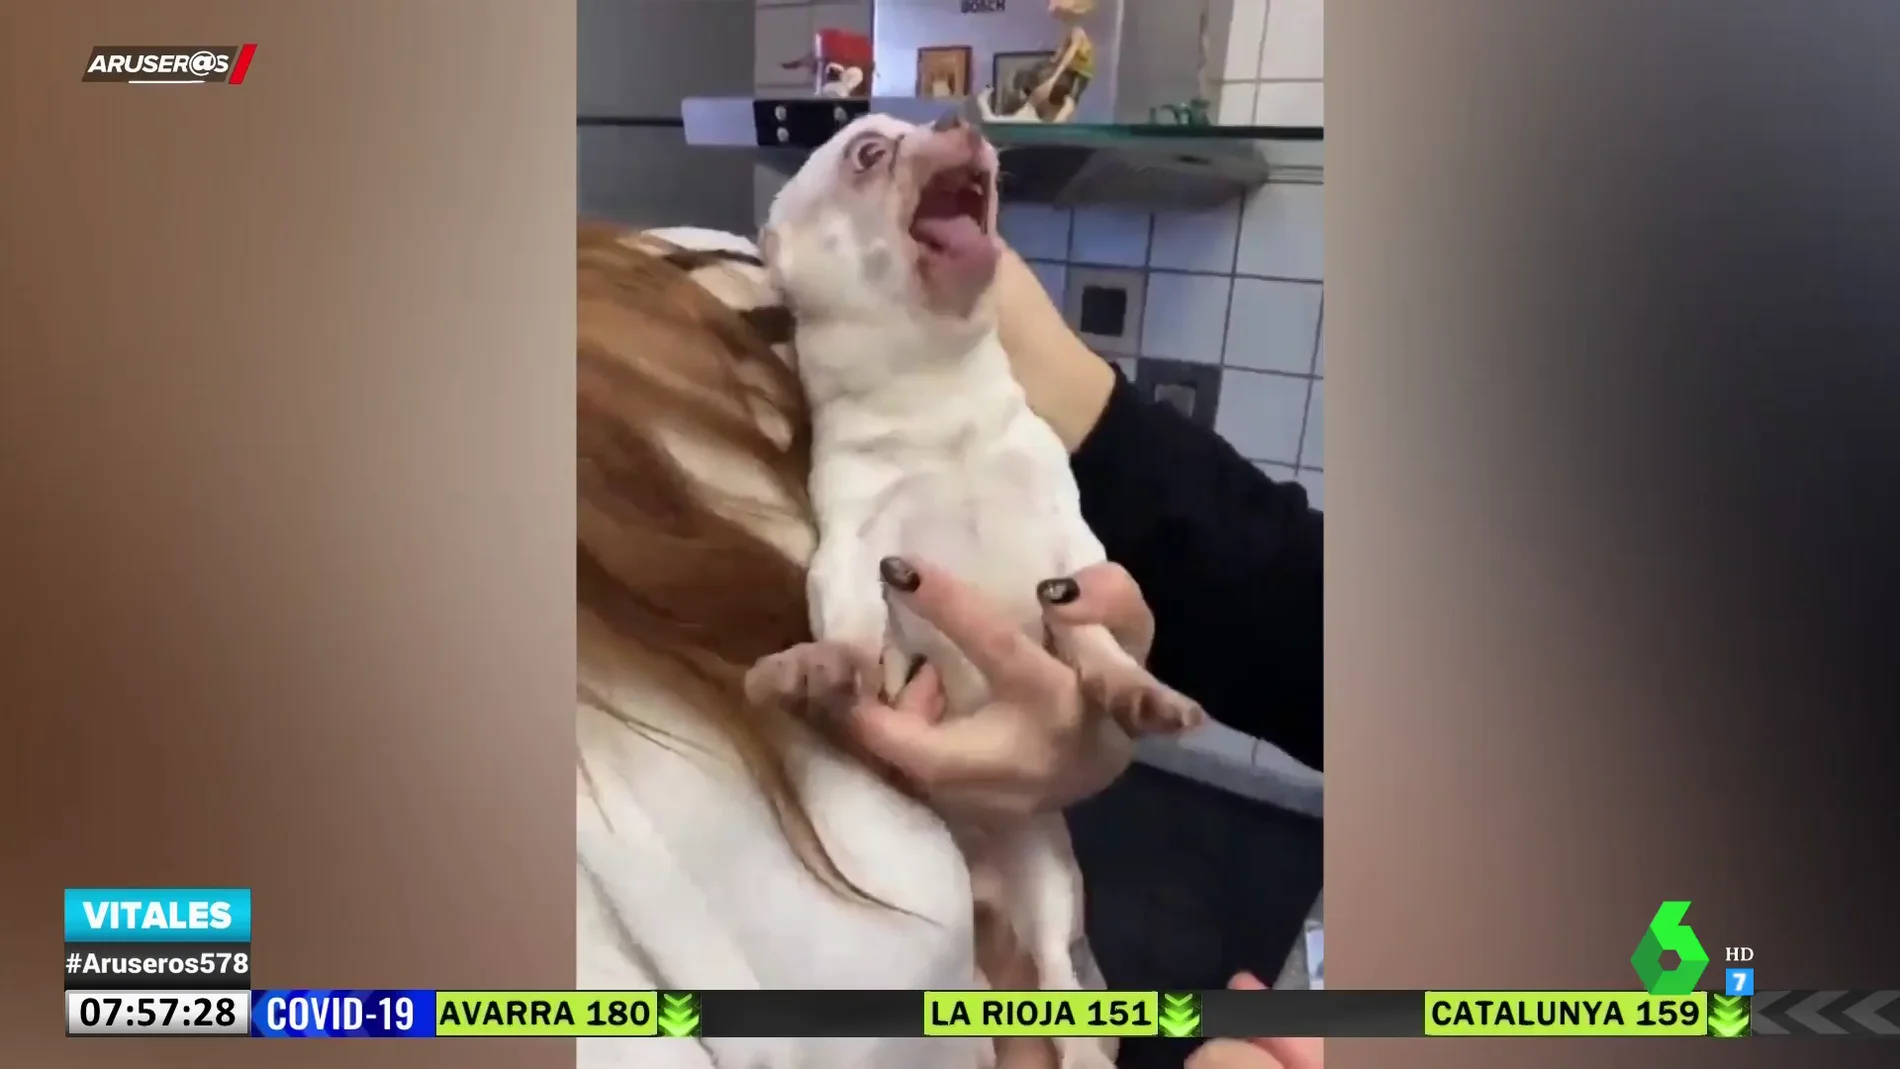 La increíble reacción de un perro al ver que le tienen que pinchar en el veterinario